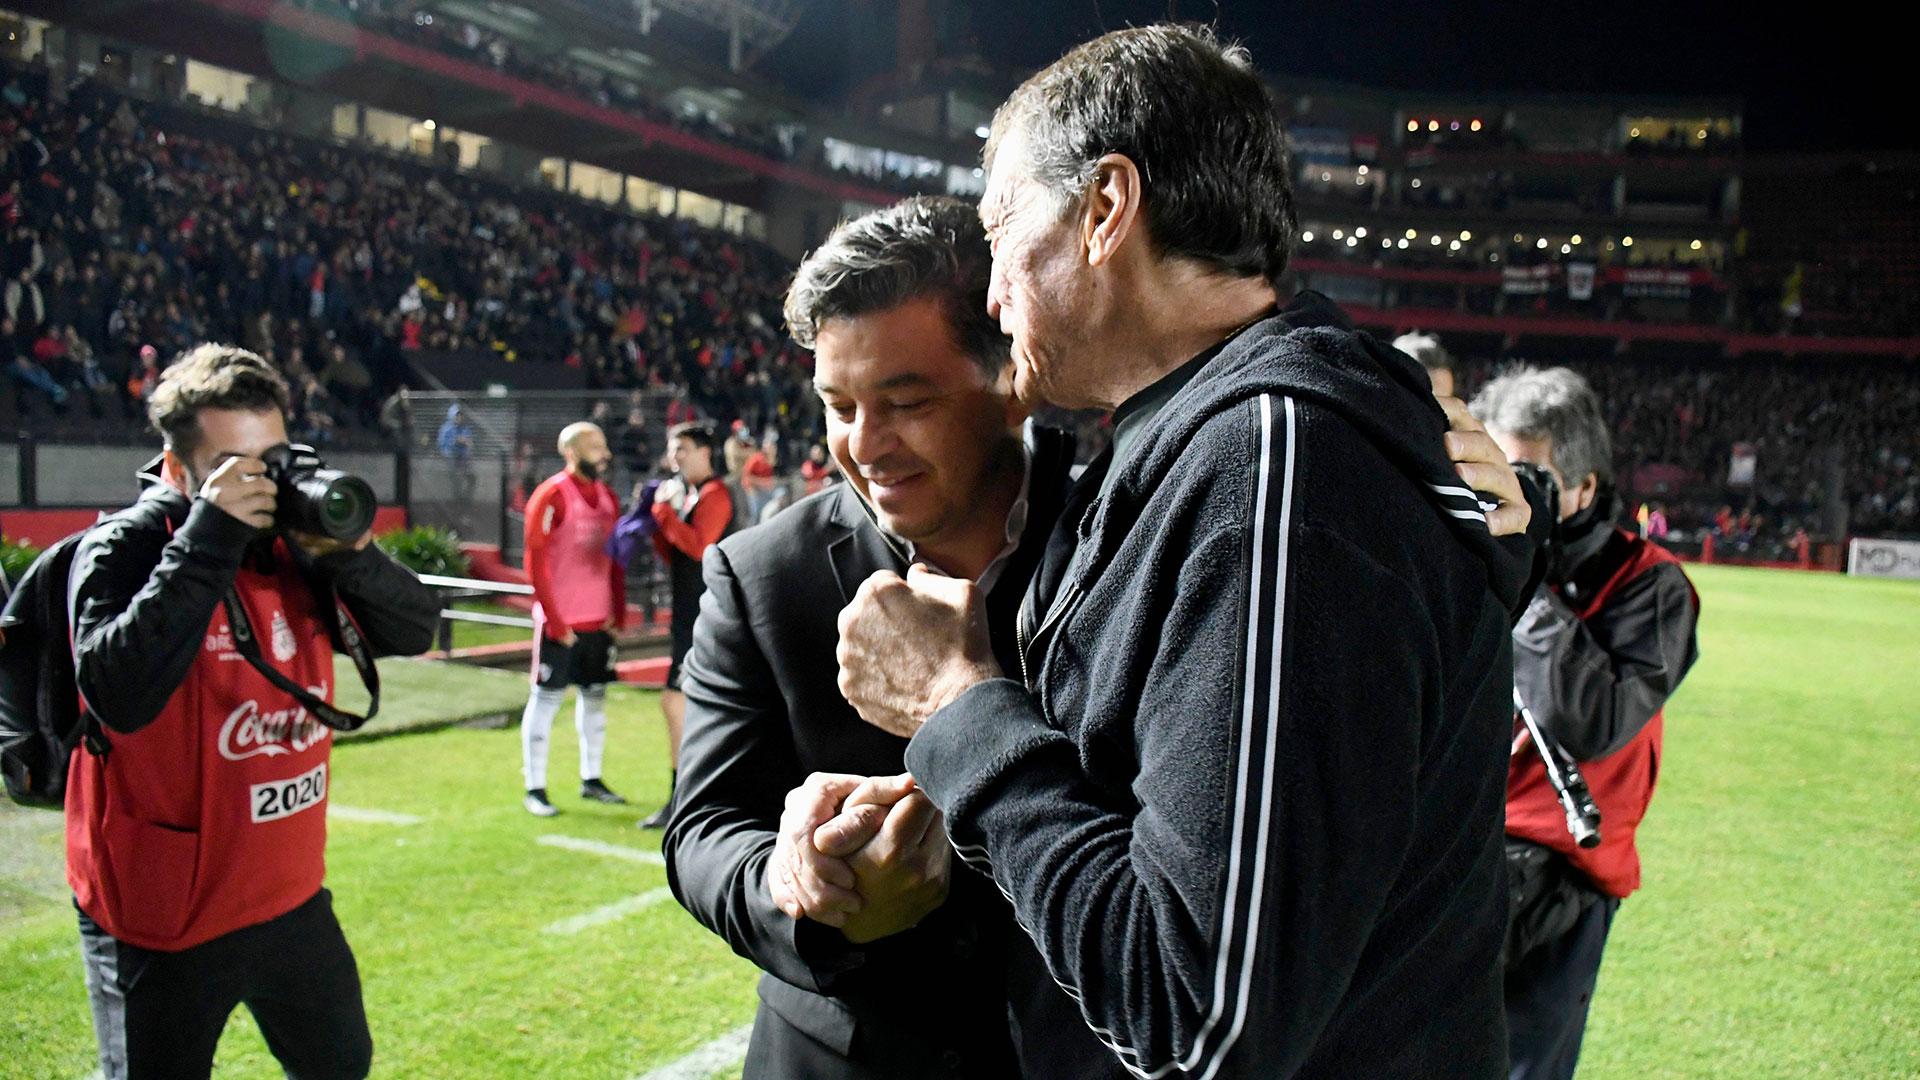 El saludo entre Falcioni y Gallardo en la fecha 3 de la Liga Profesional de Fútbol (@fotobairesarg)